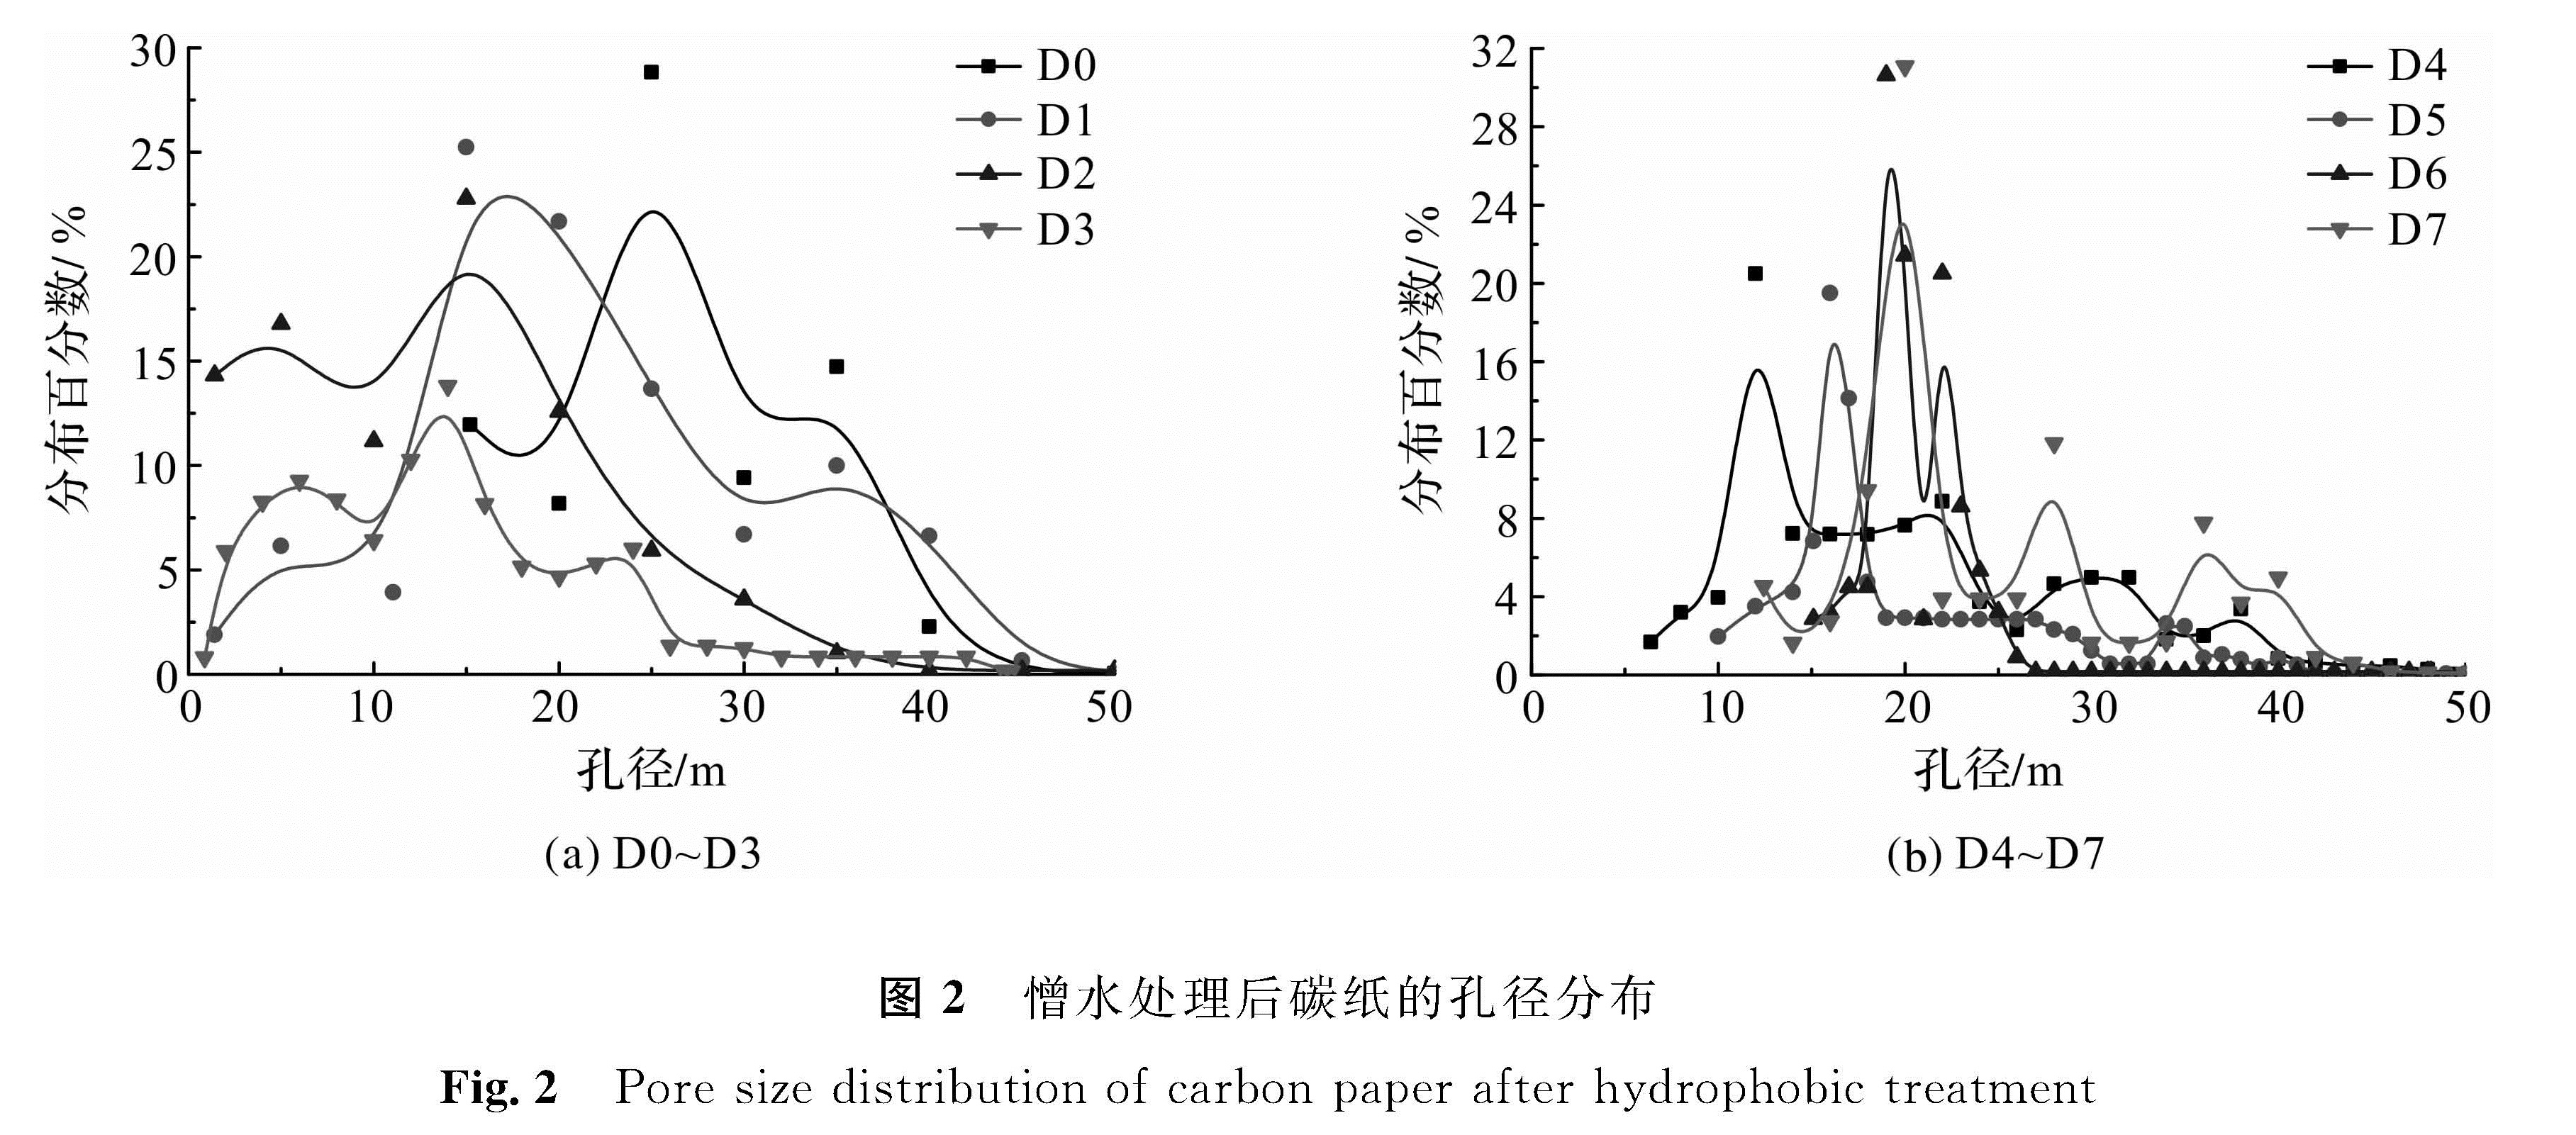 图2 憎水处理后碳纸的孔径分布<br/>Fig.2 Pore size distribution of carbon paper after hydrophobic treatment